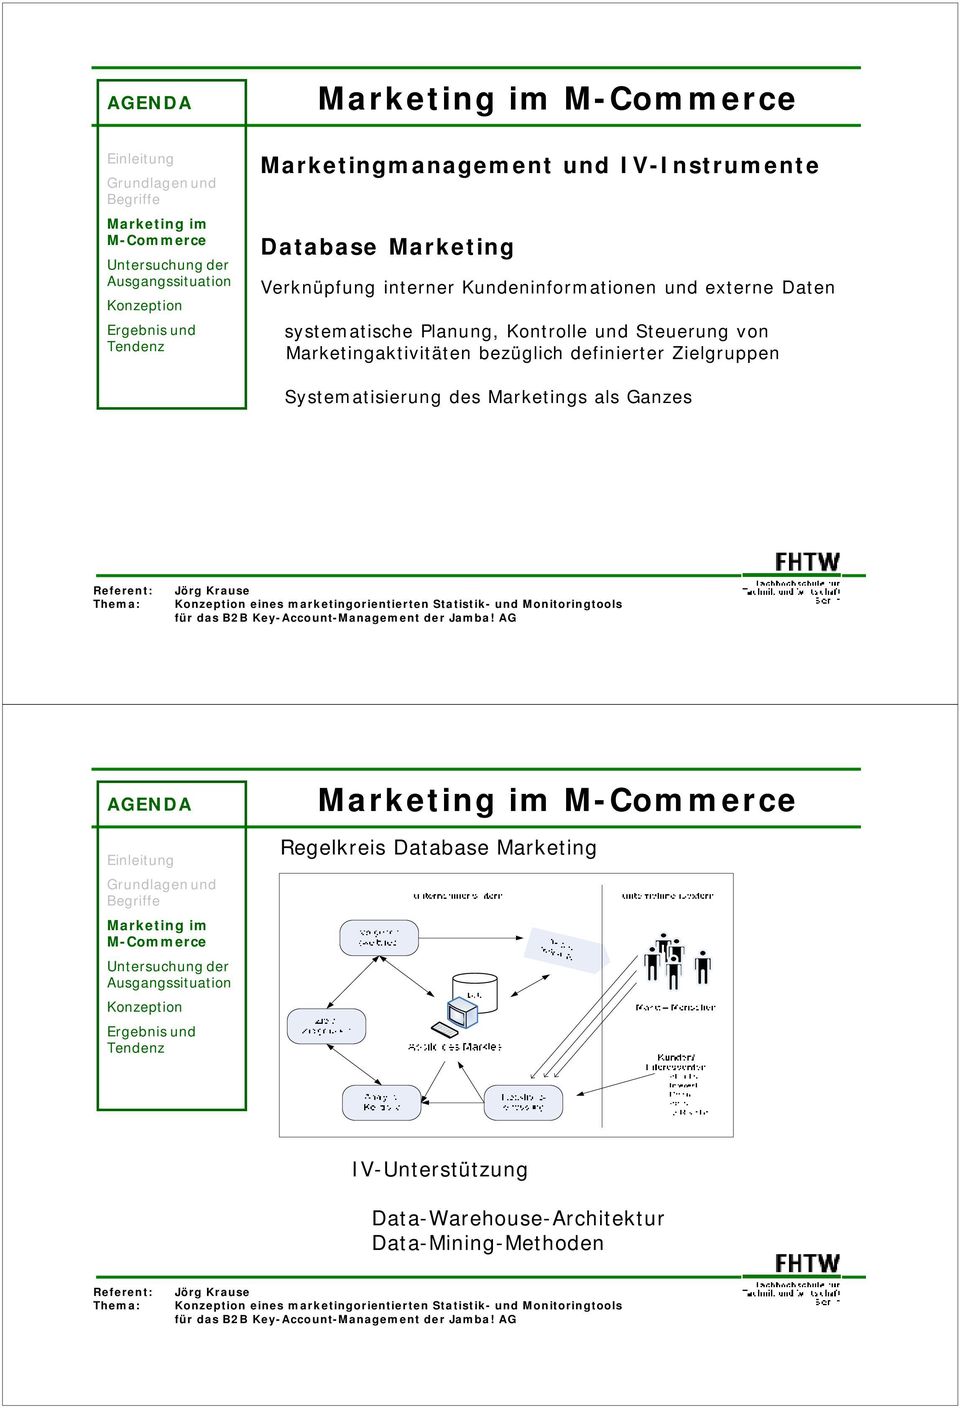 Systematisierung des Marketings als Ganzes eines marketingorientierten Statistik- und Monitoringtools Regelkreis